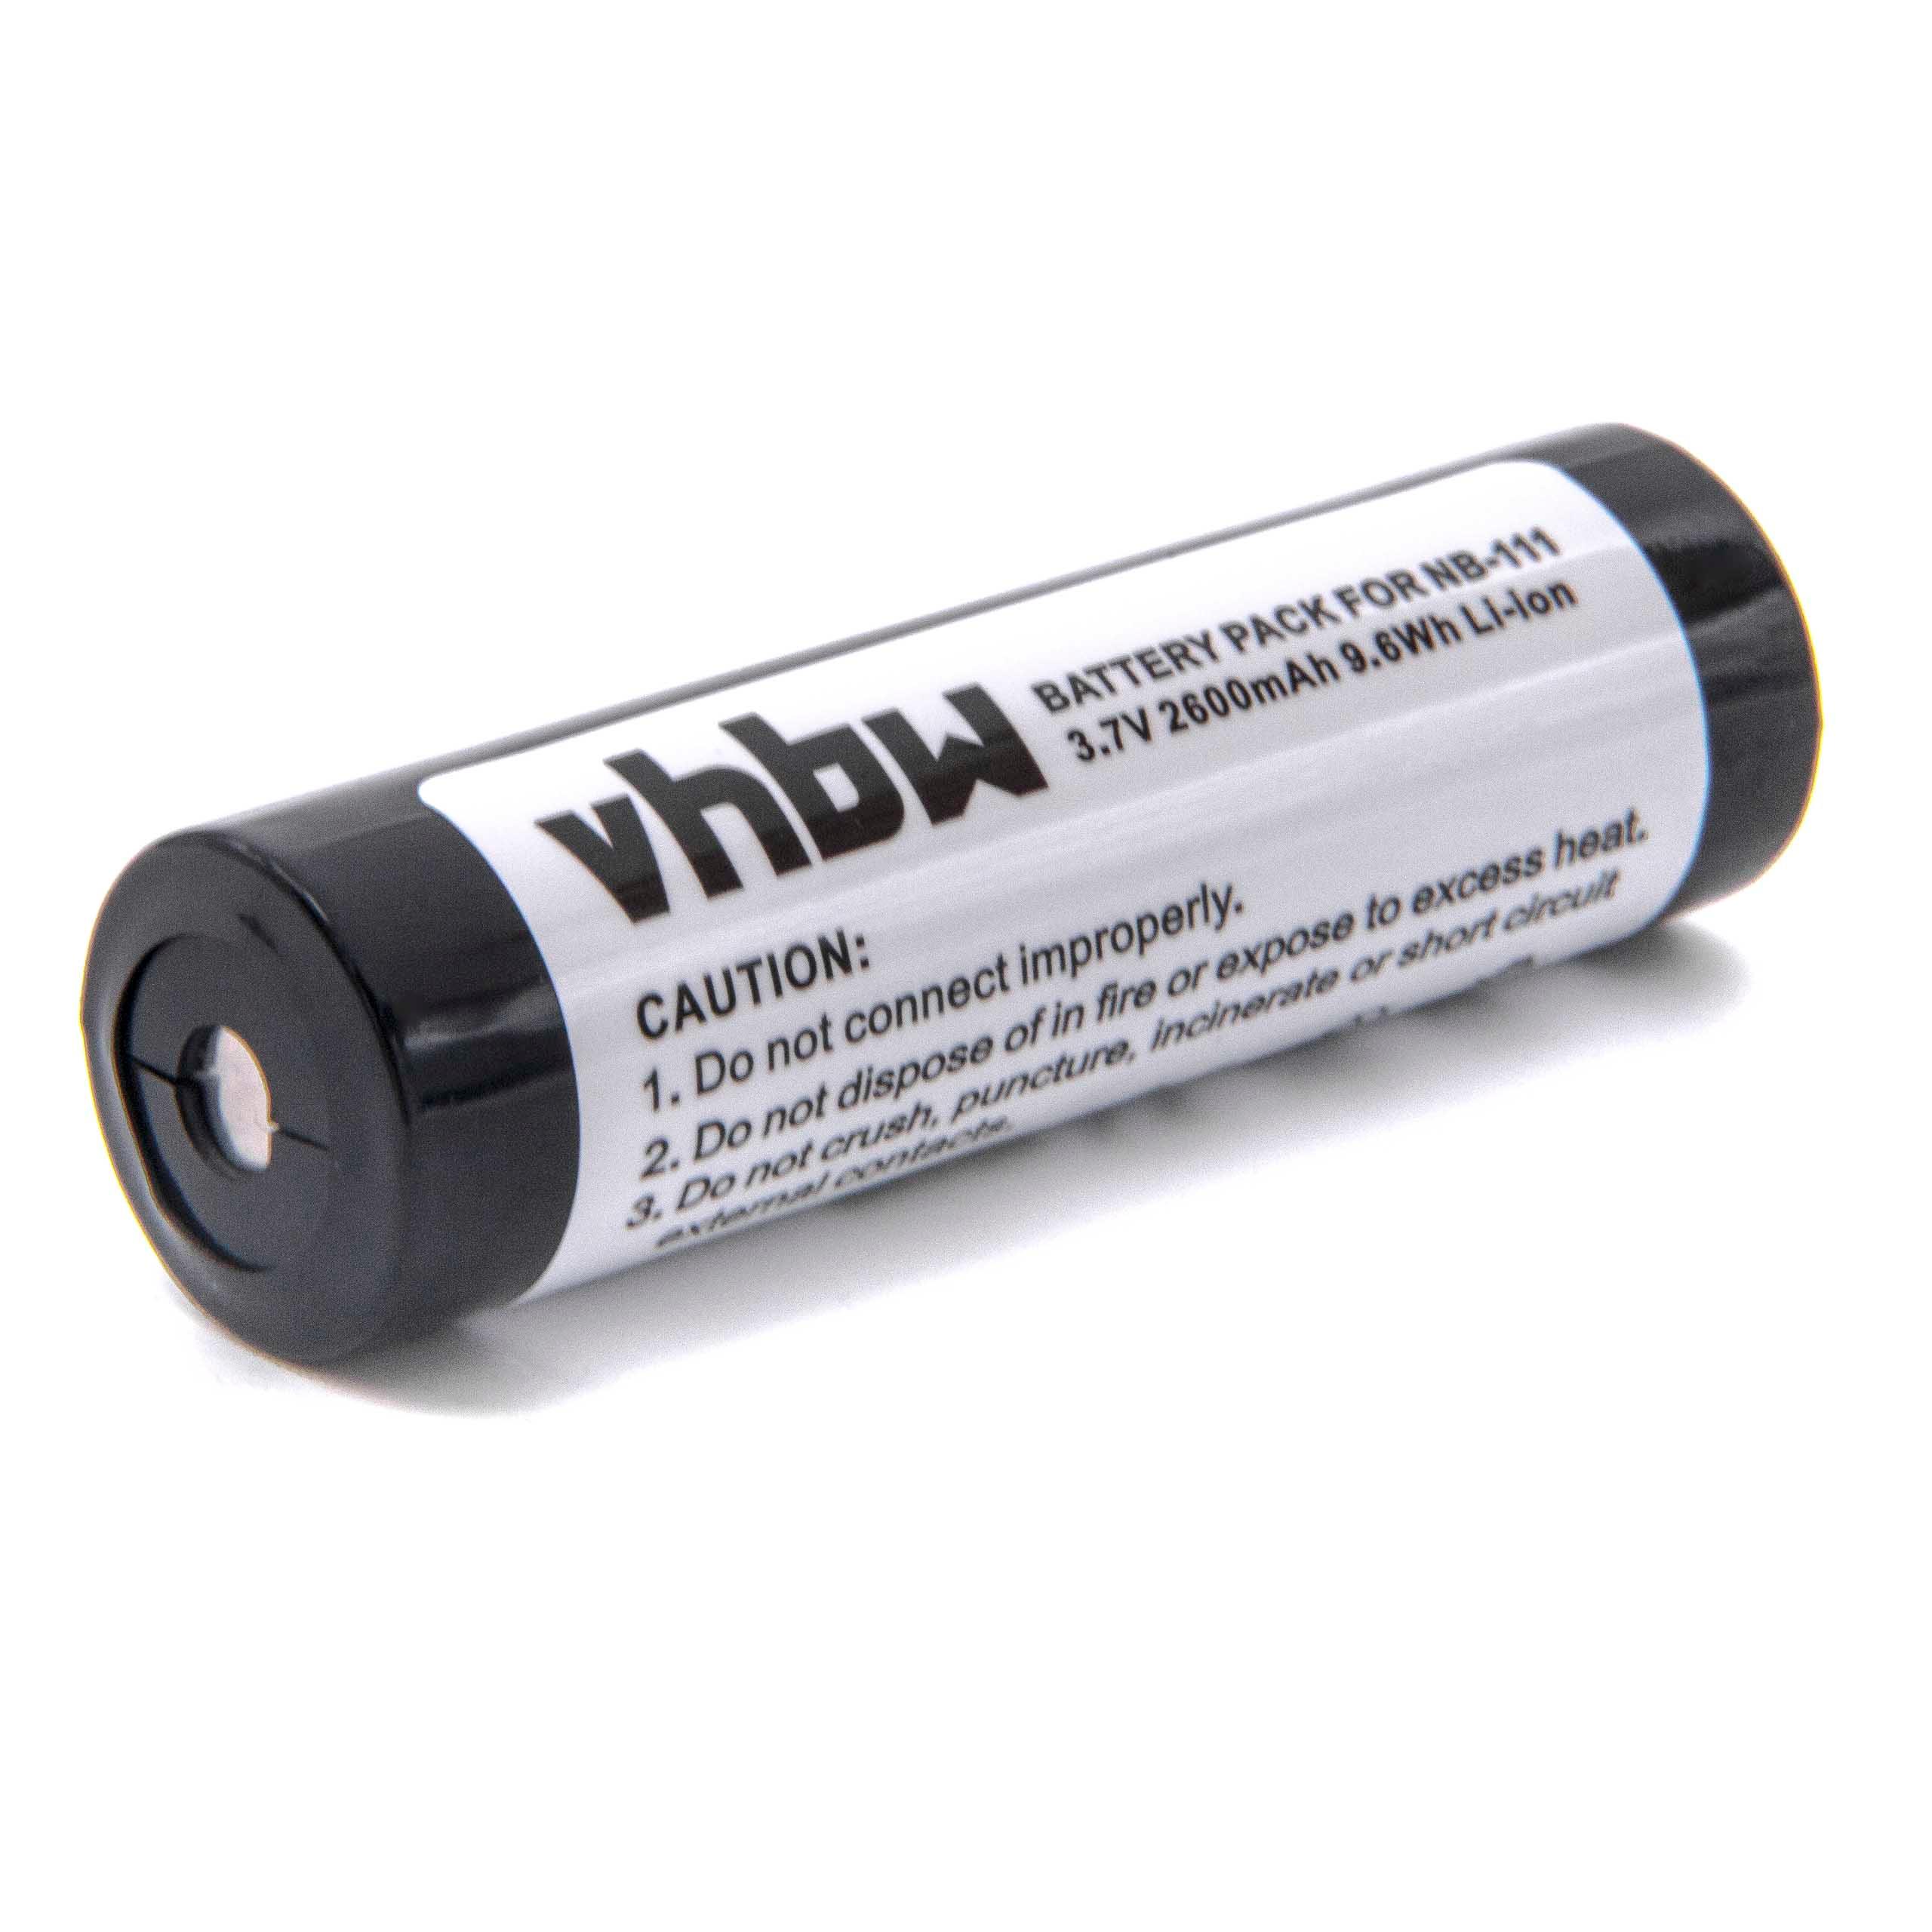 Batterie remplace BP-1600R pour mini disque - 2600mAh 3,7V Li-ion